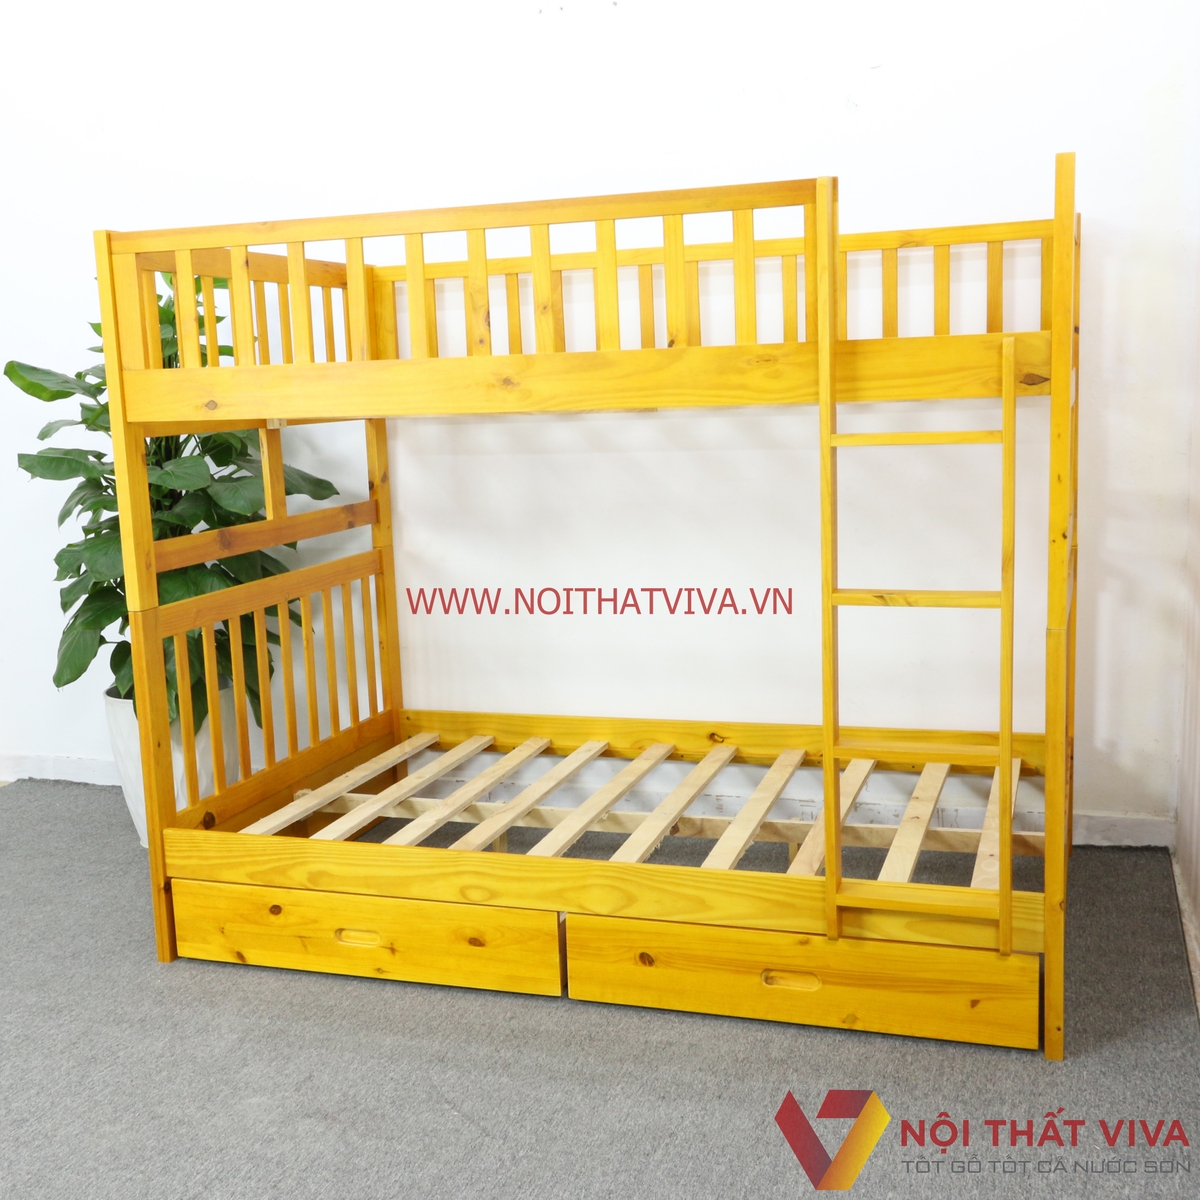 Gợi ý những mẫu giường ngủ bằng gỗ đẹp khiến ai thấy cũng mê